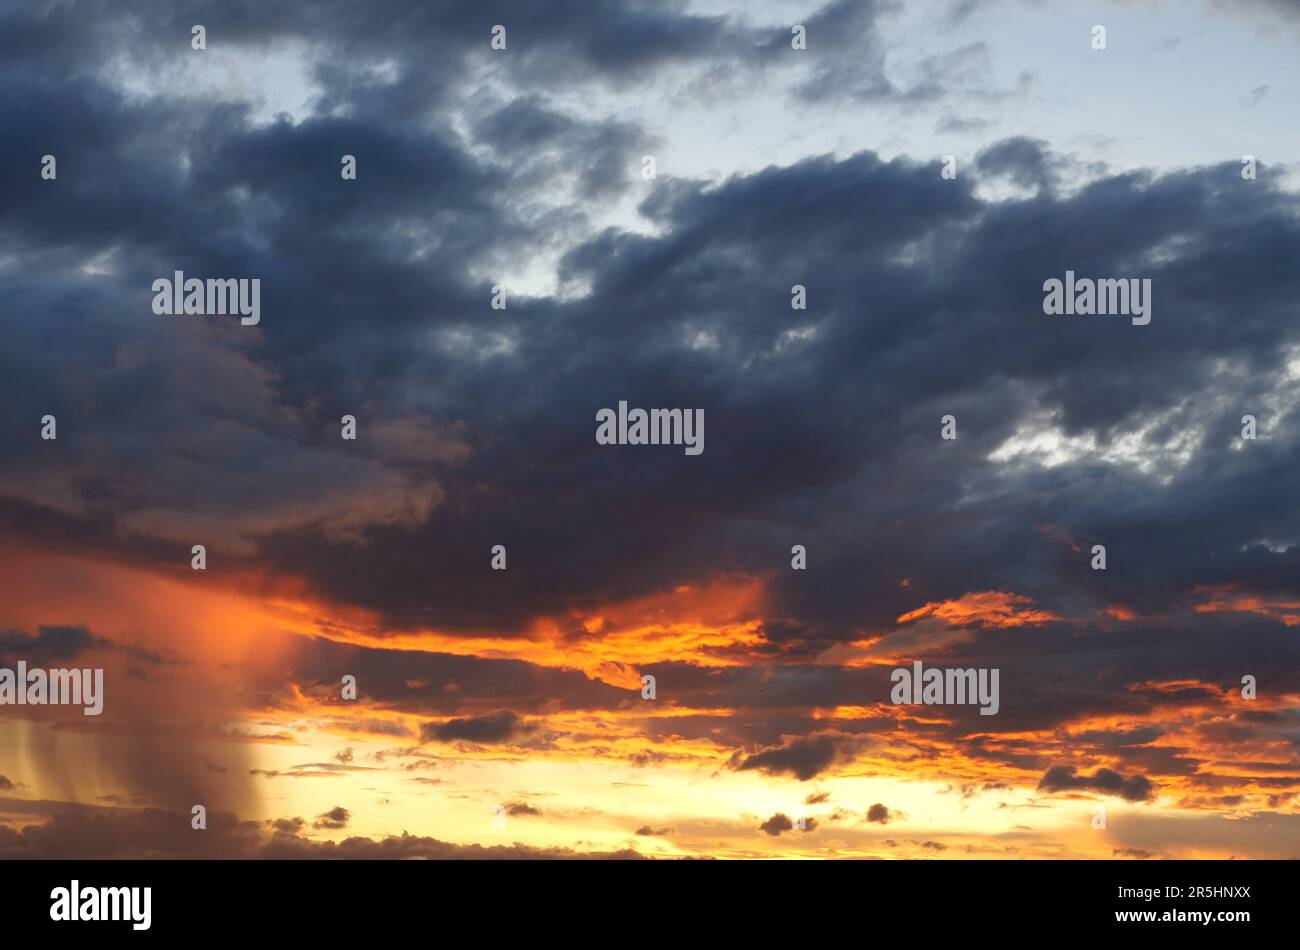 Nuvola e cielo blu in un'ora magica al tramonto, l'orizzonte cominciò a diventare arancione con nuvola viola di notte, drammatica area di paesaggio nuvoloso con caduta di pioggia Foto Stock